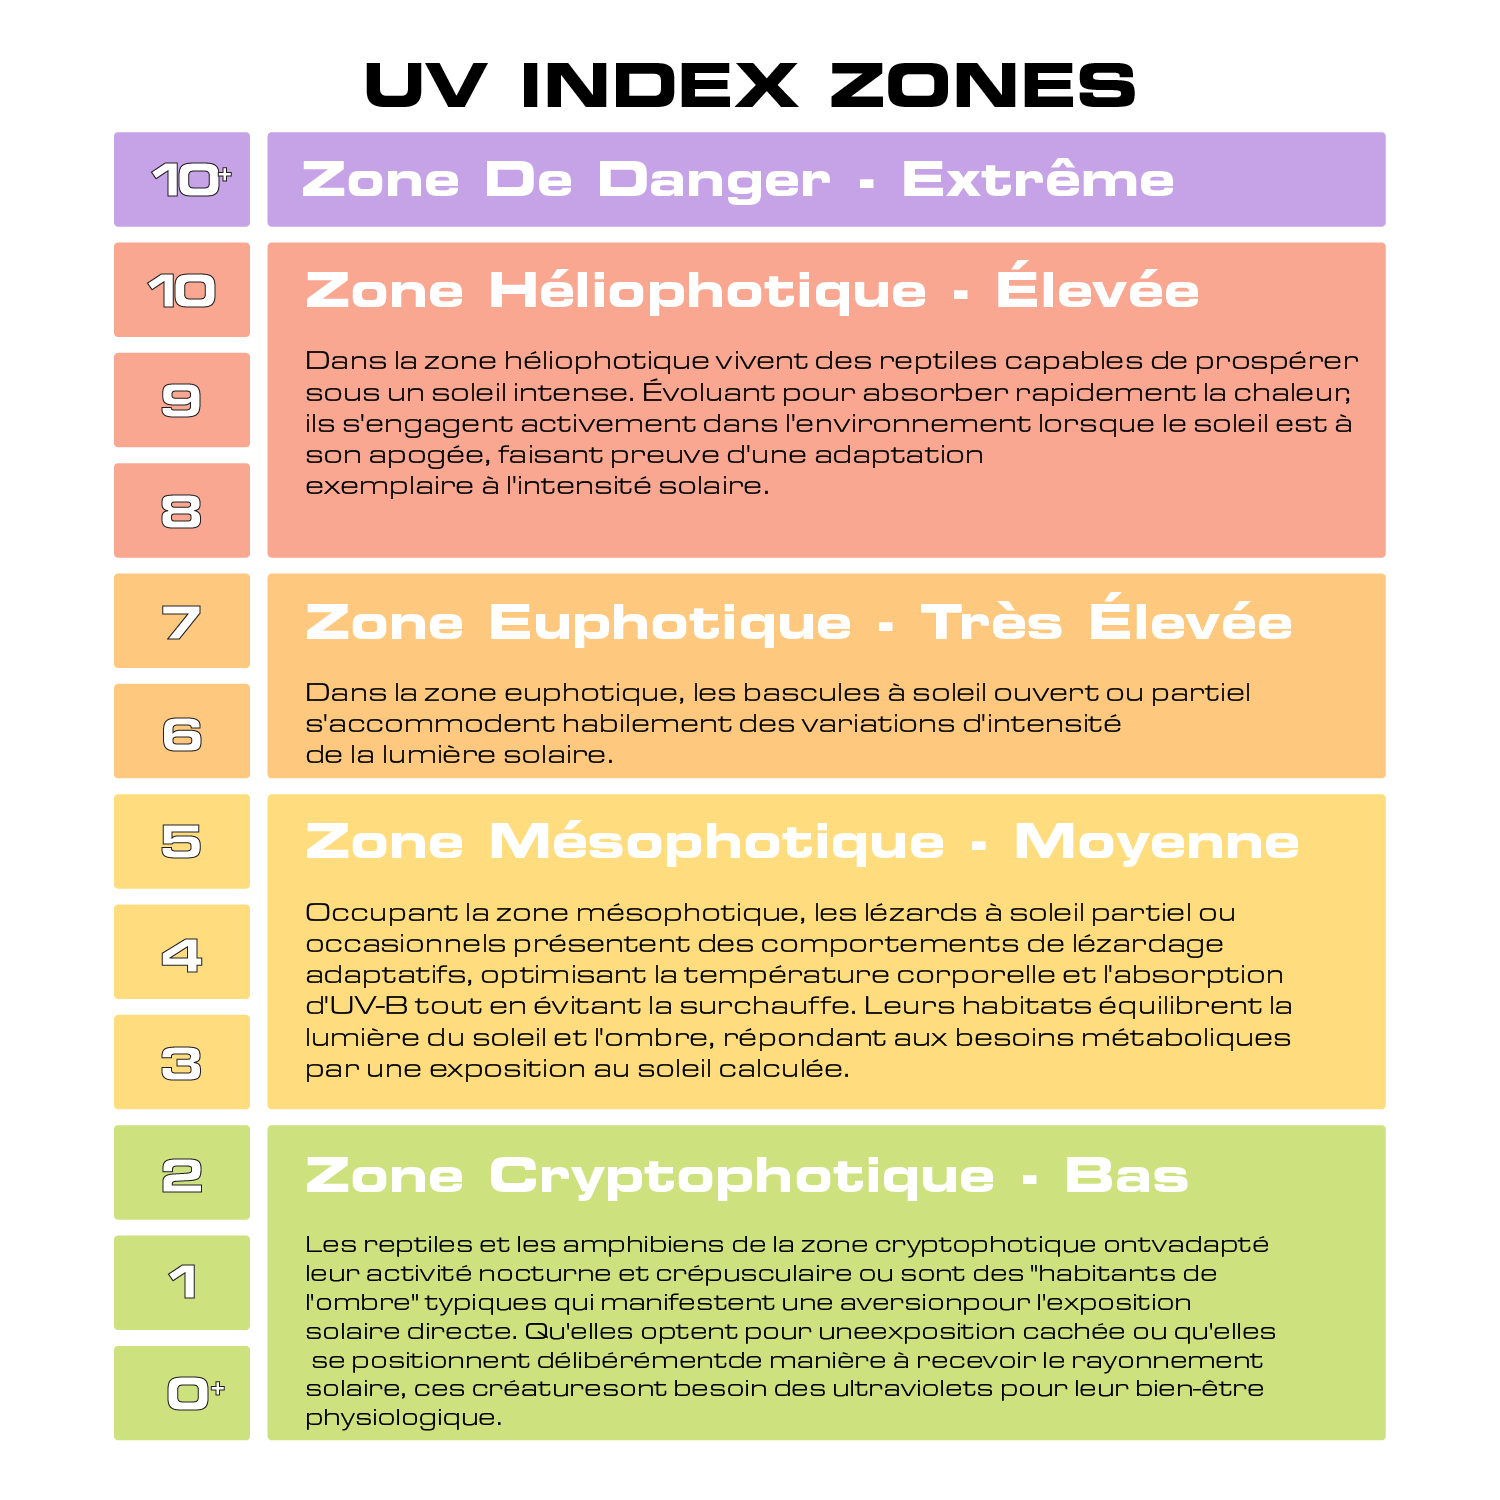 UV Index Zones